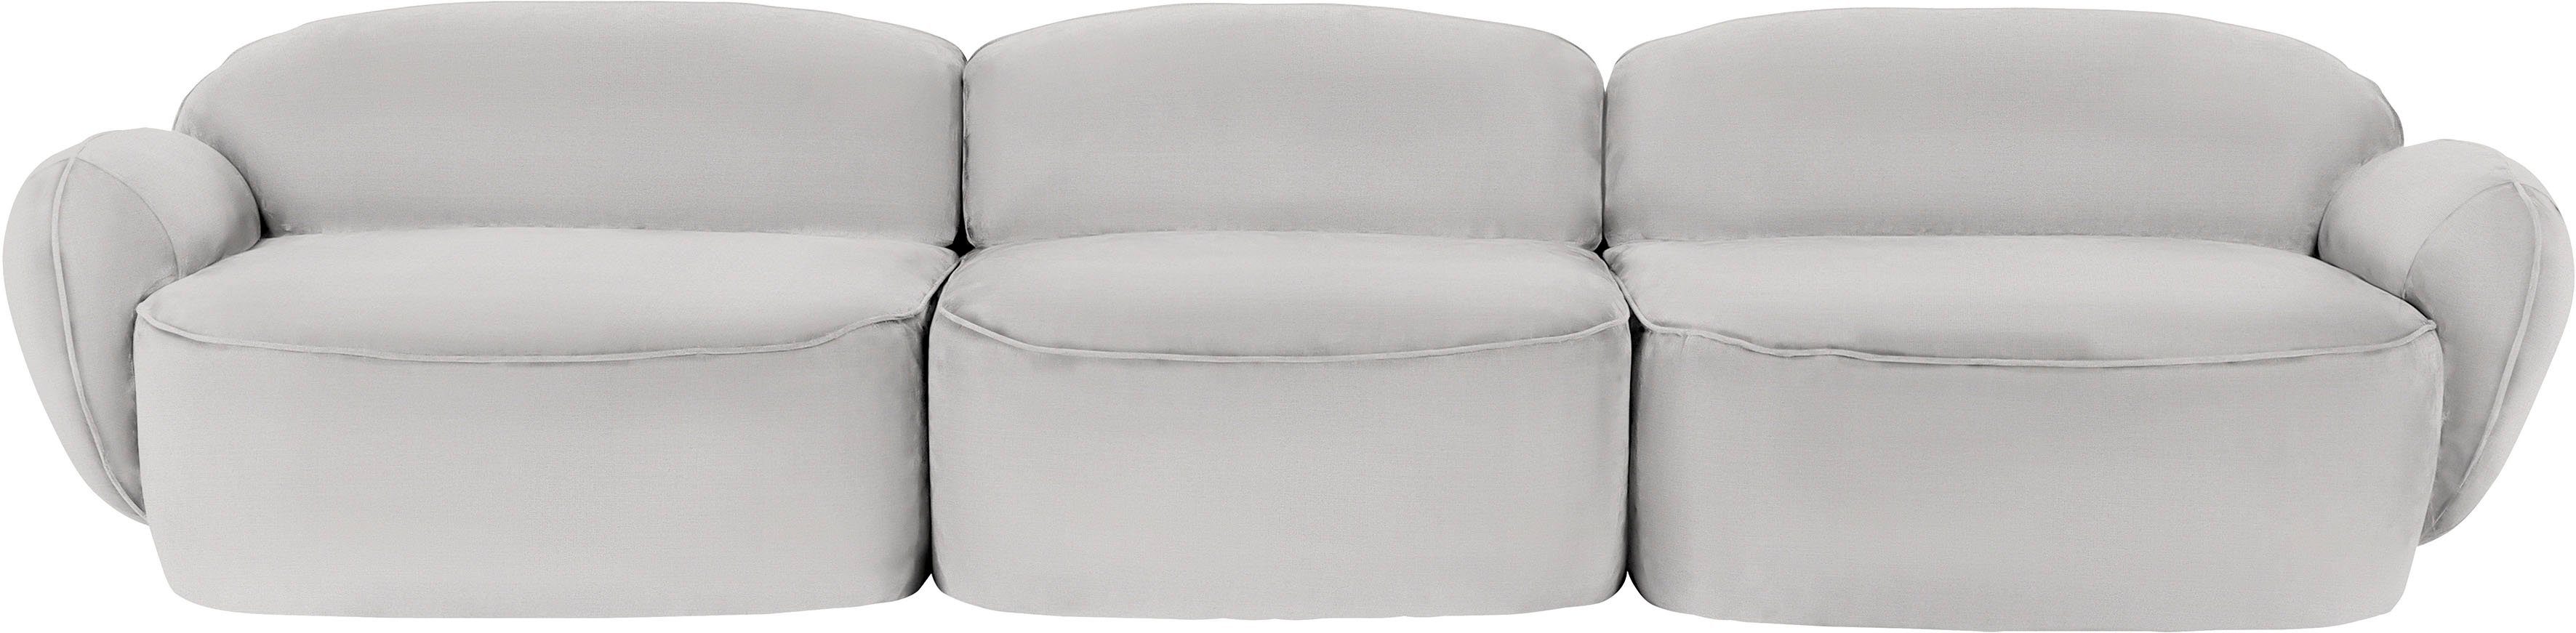 furninova 3,5-Sitzer Bubble, komfortabel durch Memoryschaum, skandinavischen Design im